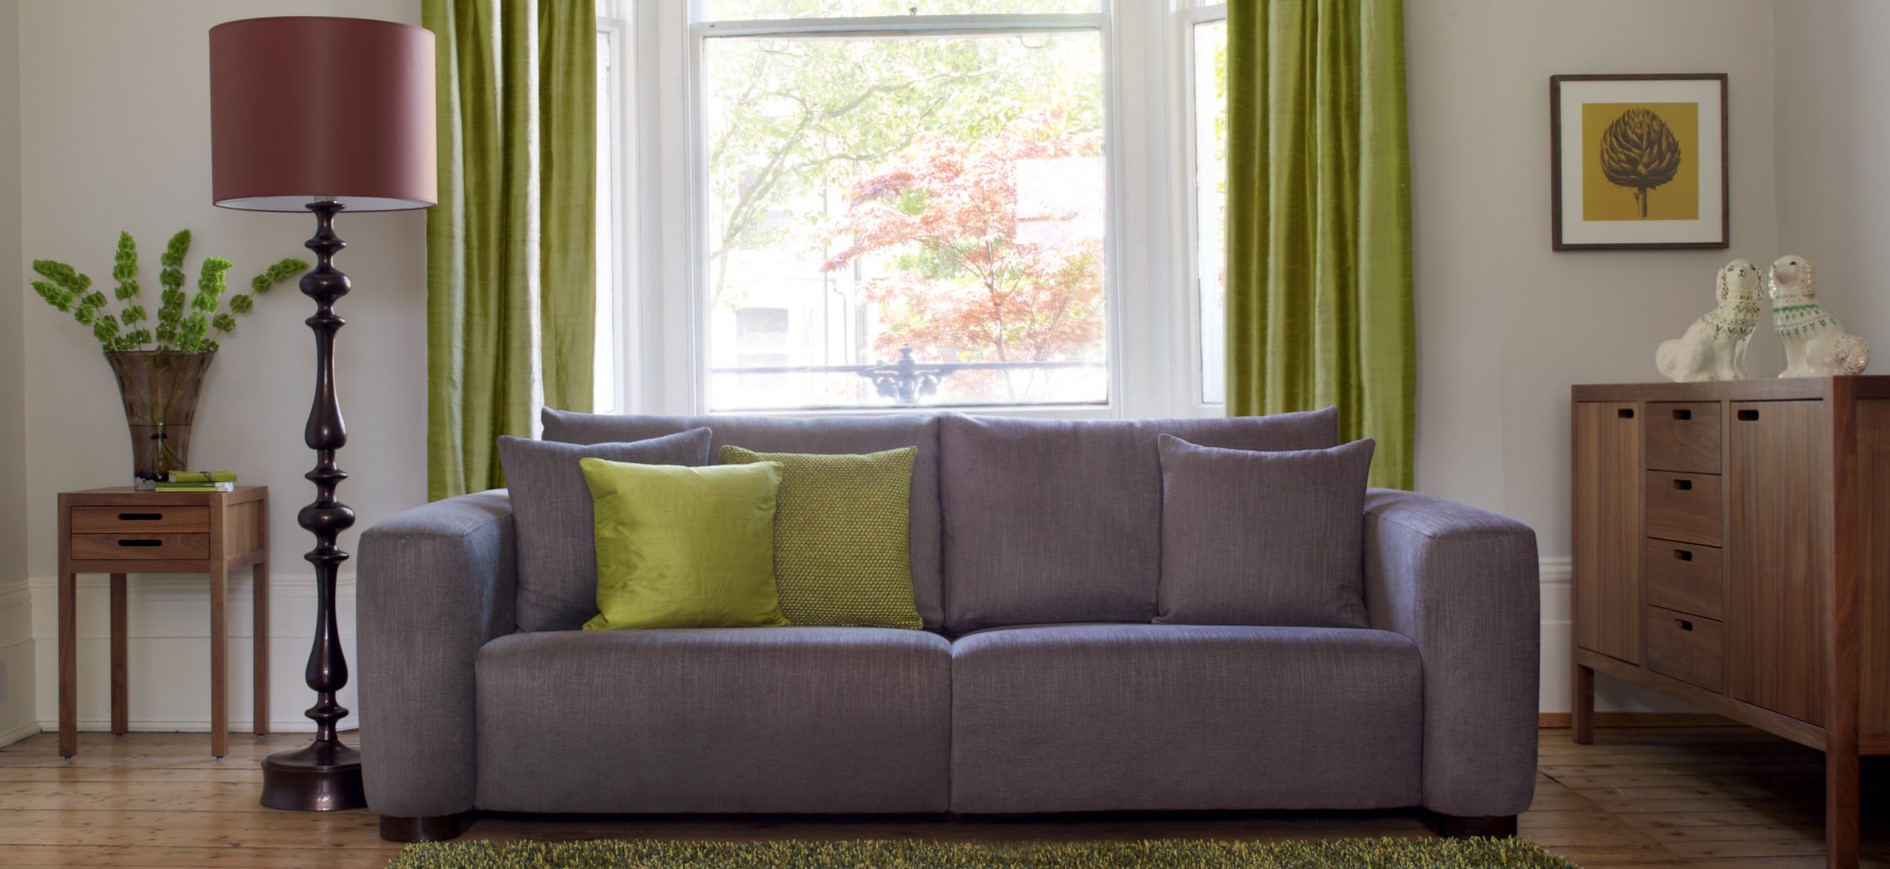 Декоративные подушки на диване можно подобрать под цвет штор в гостиной